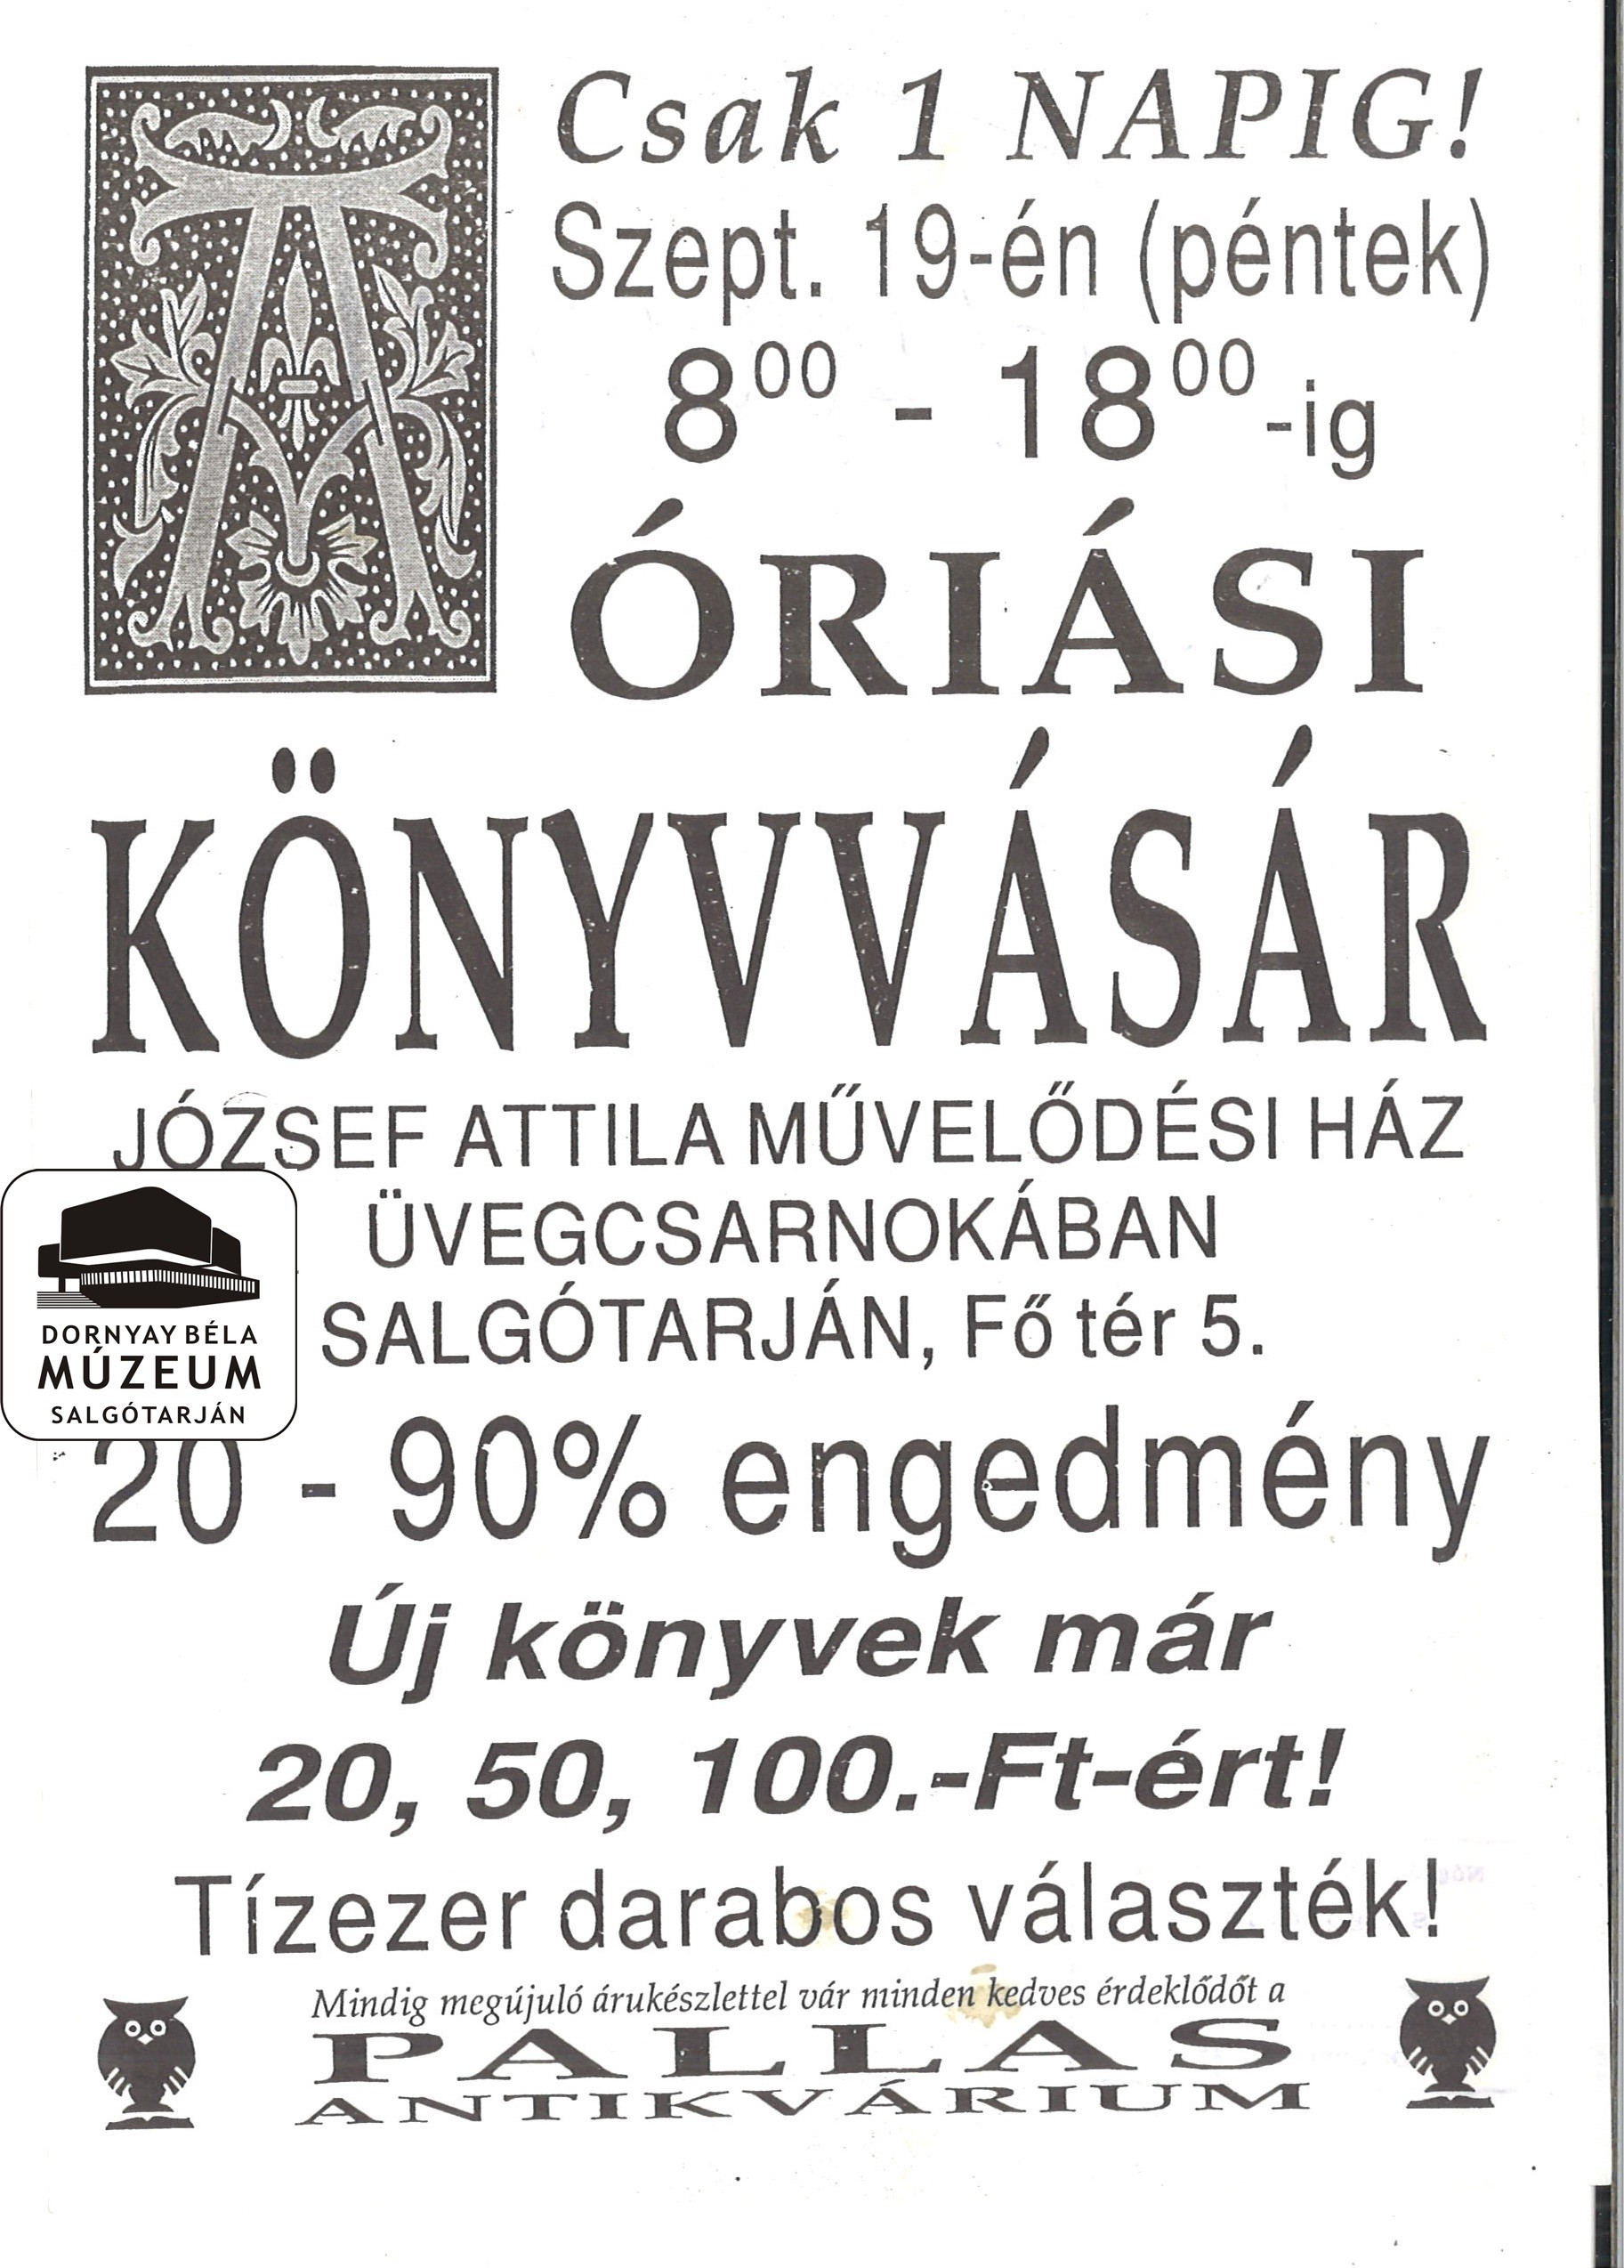 Óriási Könyvvásár a József Attila Művelődési Házban (Dornyay Béla Múzeum, Salgótarján CC BY-NC-SA)